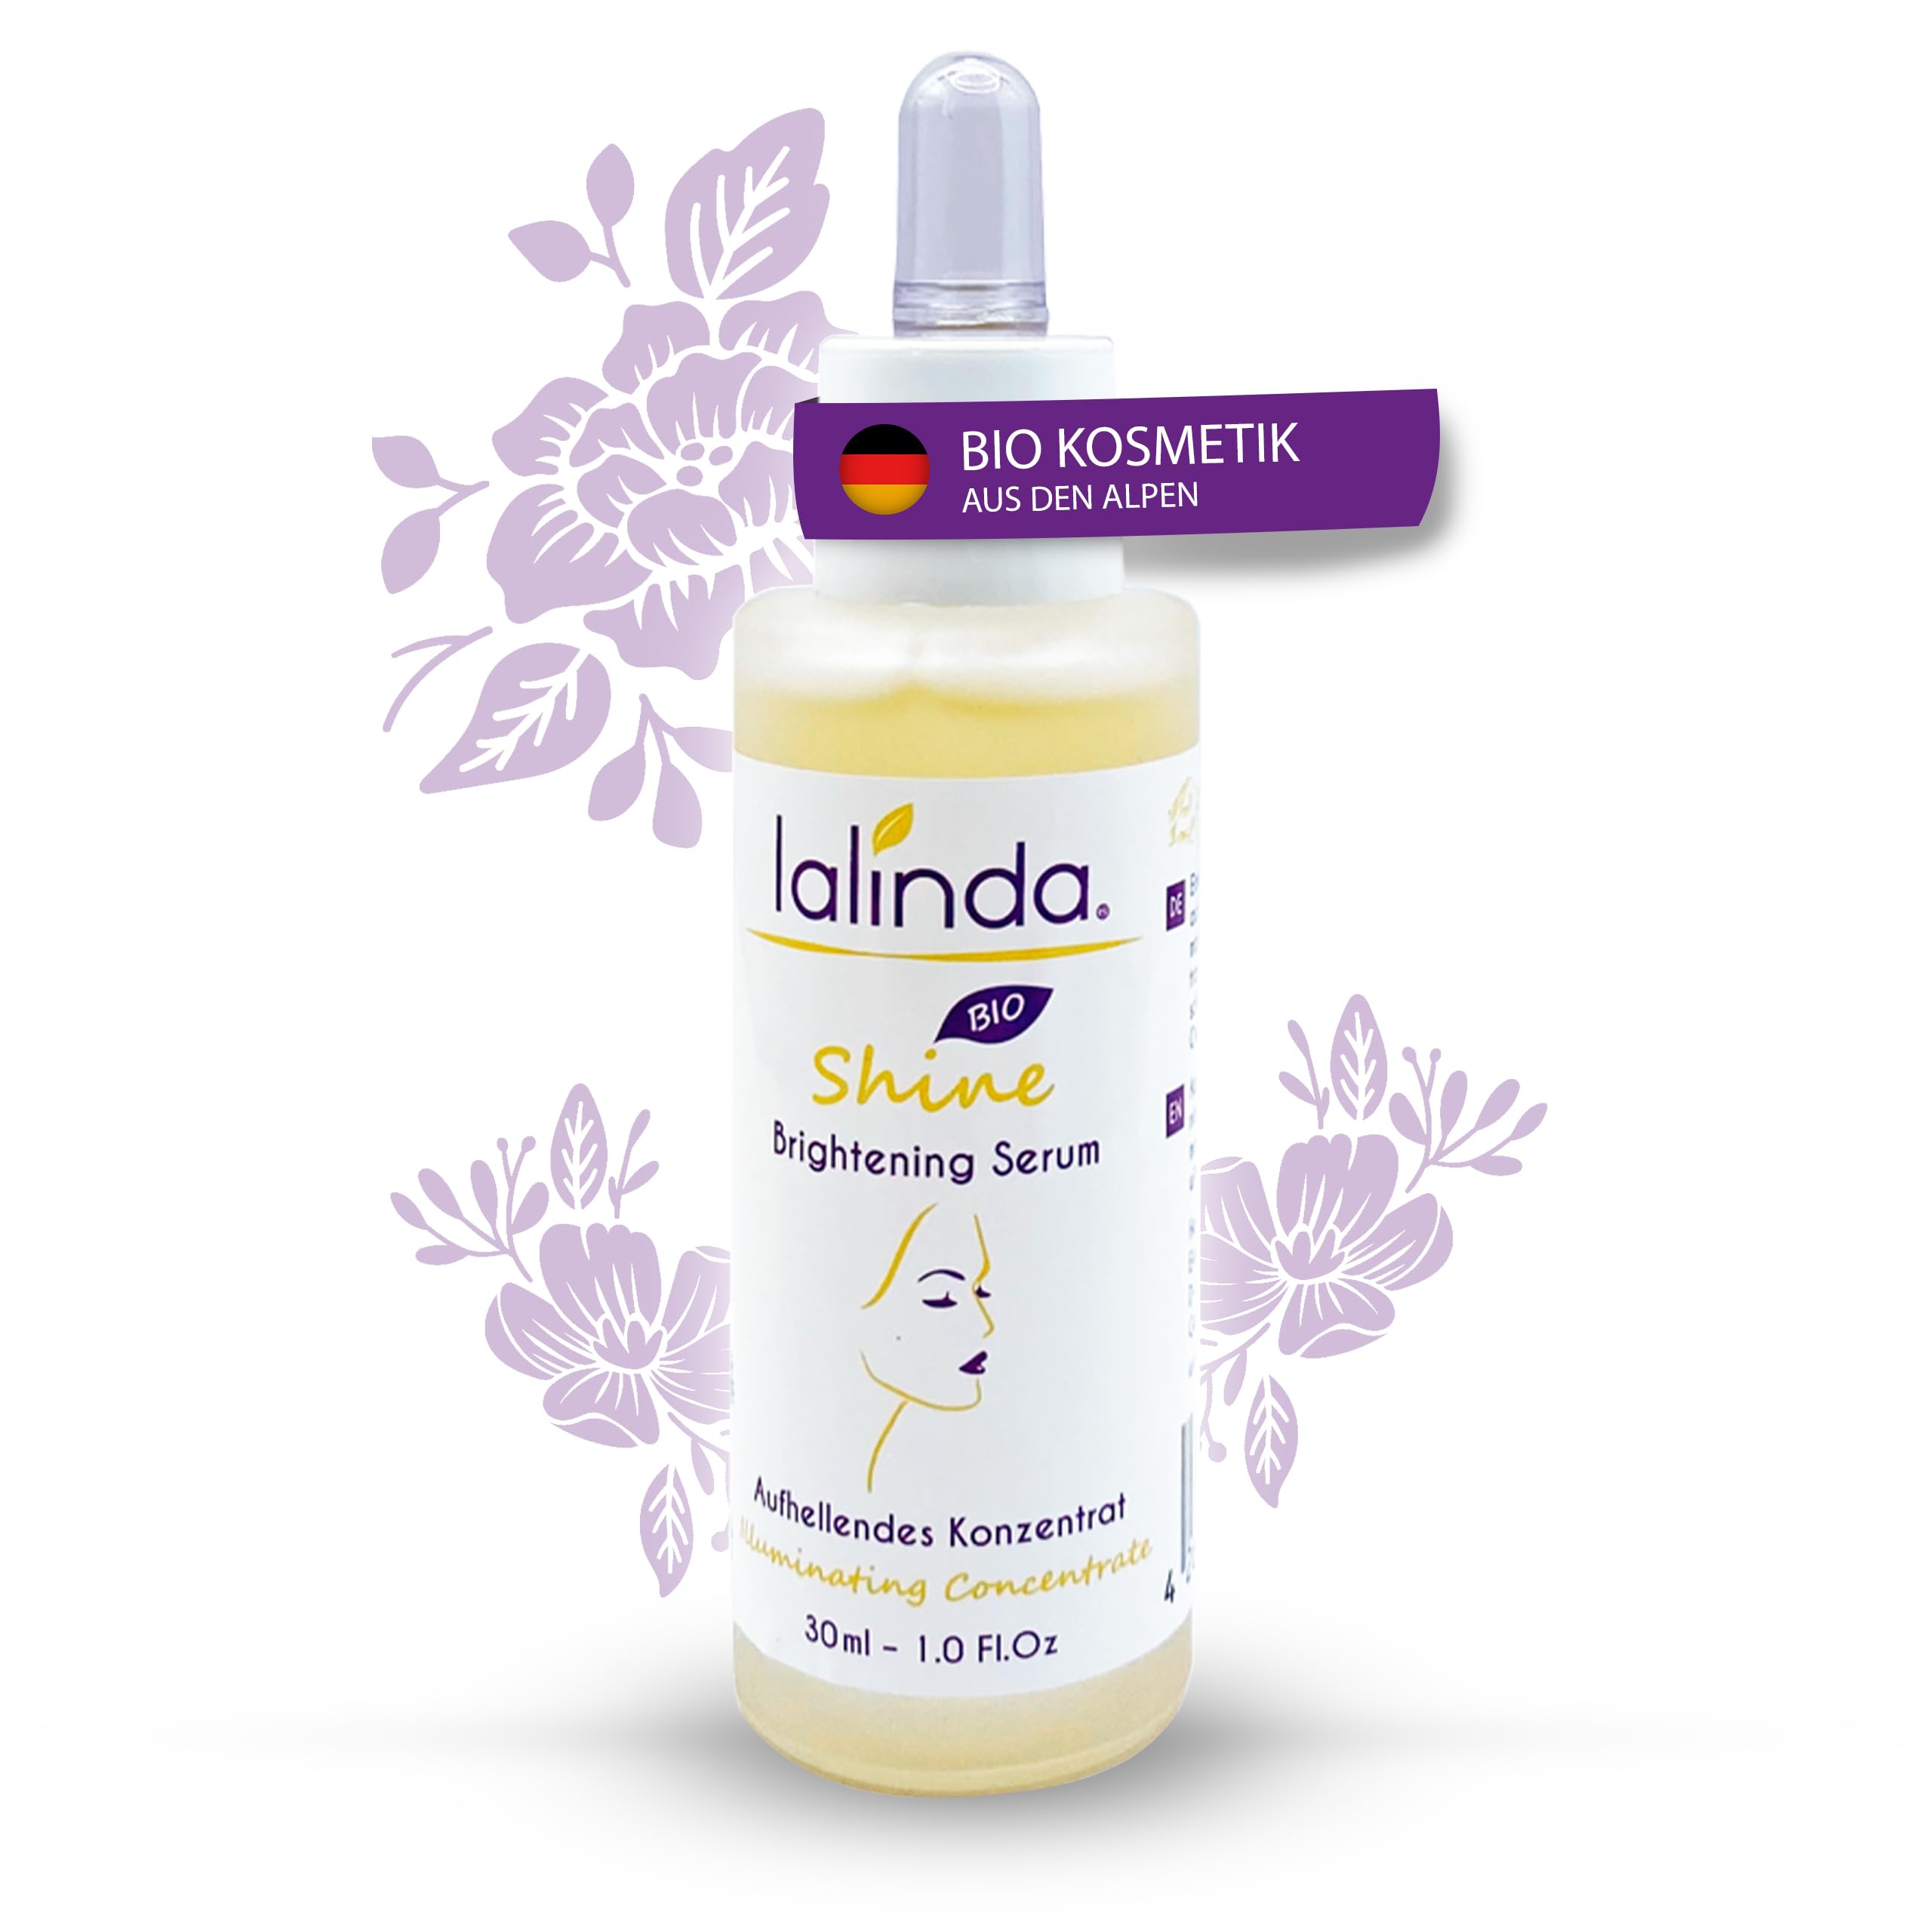 lalinda - BIO Brightening Serum mit Vitamin C | Effektiv bei Pigmentflecken, Altersflecken und Falten | Hyaluron, hochkonzentriertes BIO Blaualgenextrakt | Vegan | Anti-Aging Effekt | 30ml